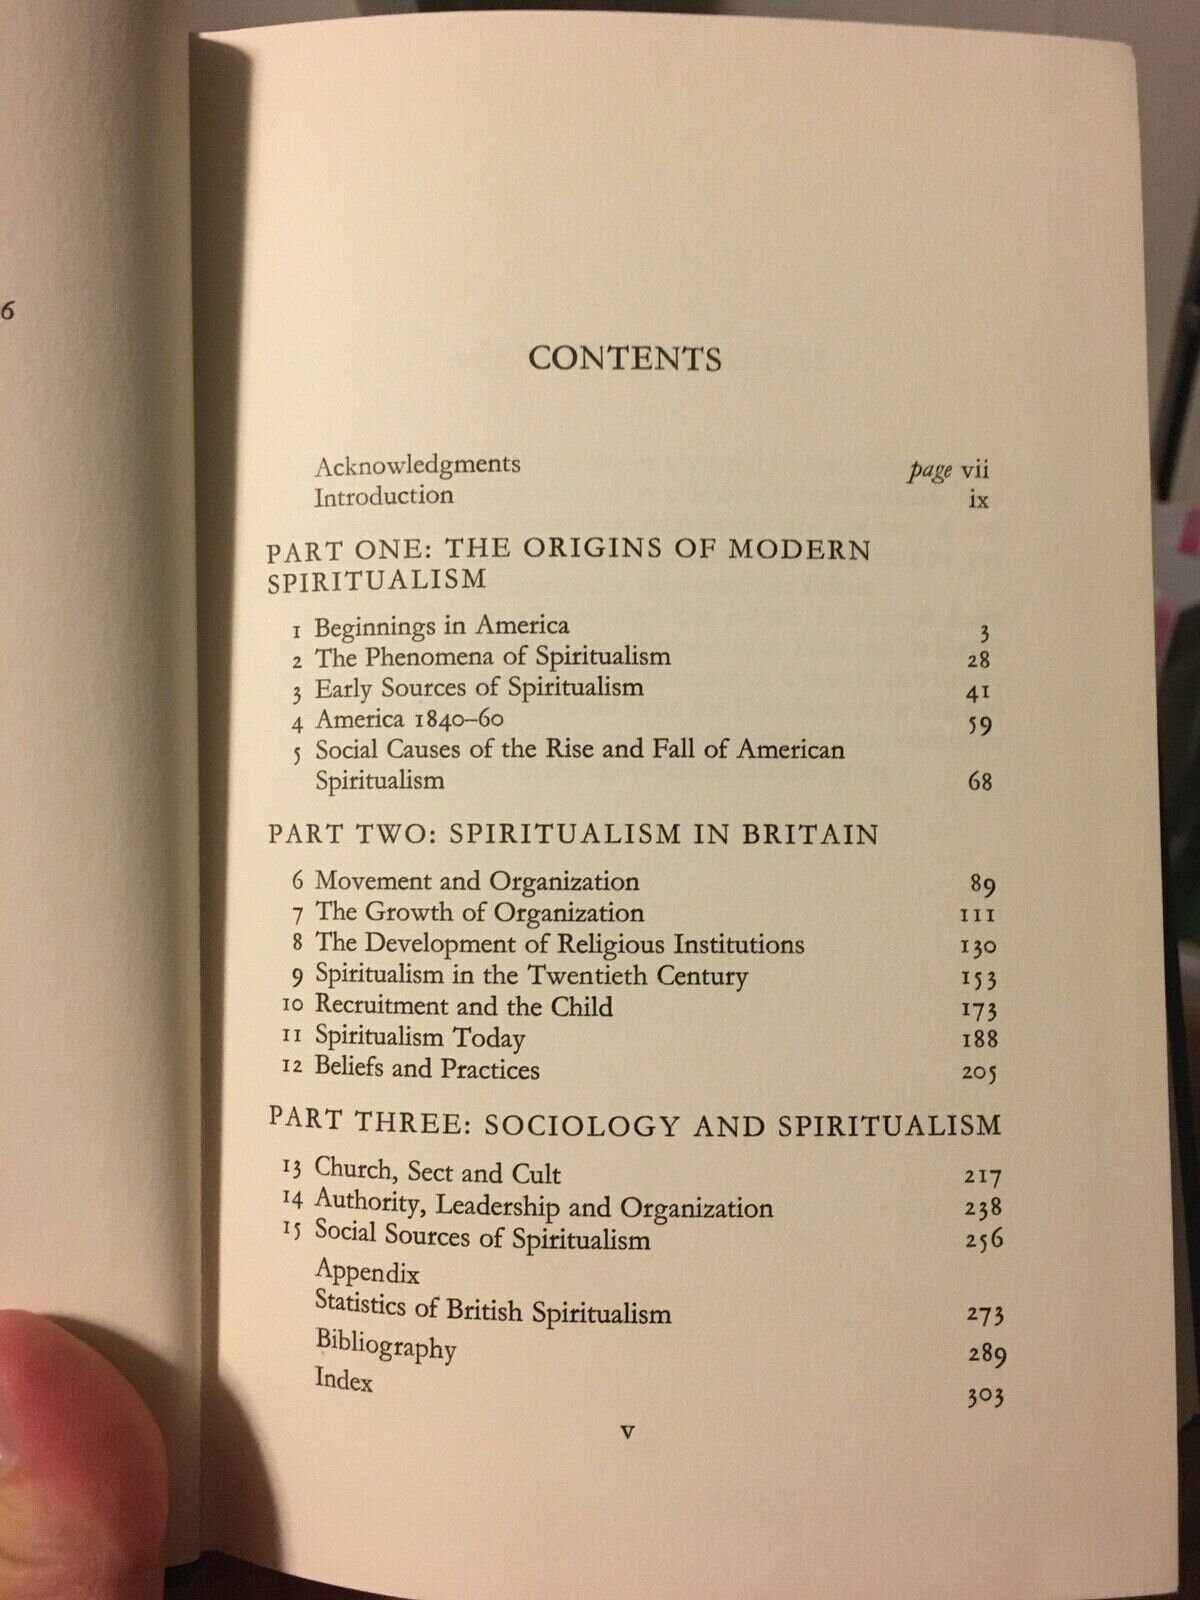 NELSON, Geoffrey K. "Spiritualism & Society" [Schocken Books, 1969] - Buzz Bookstore